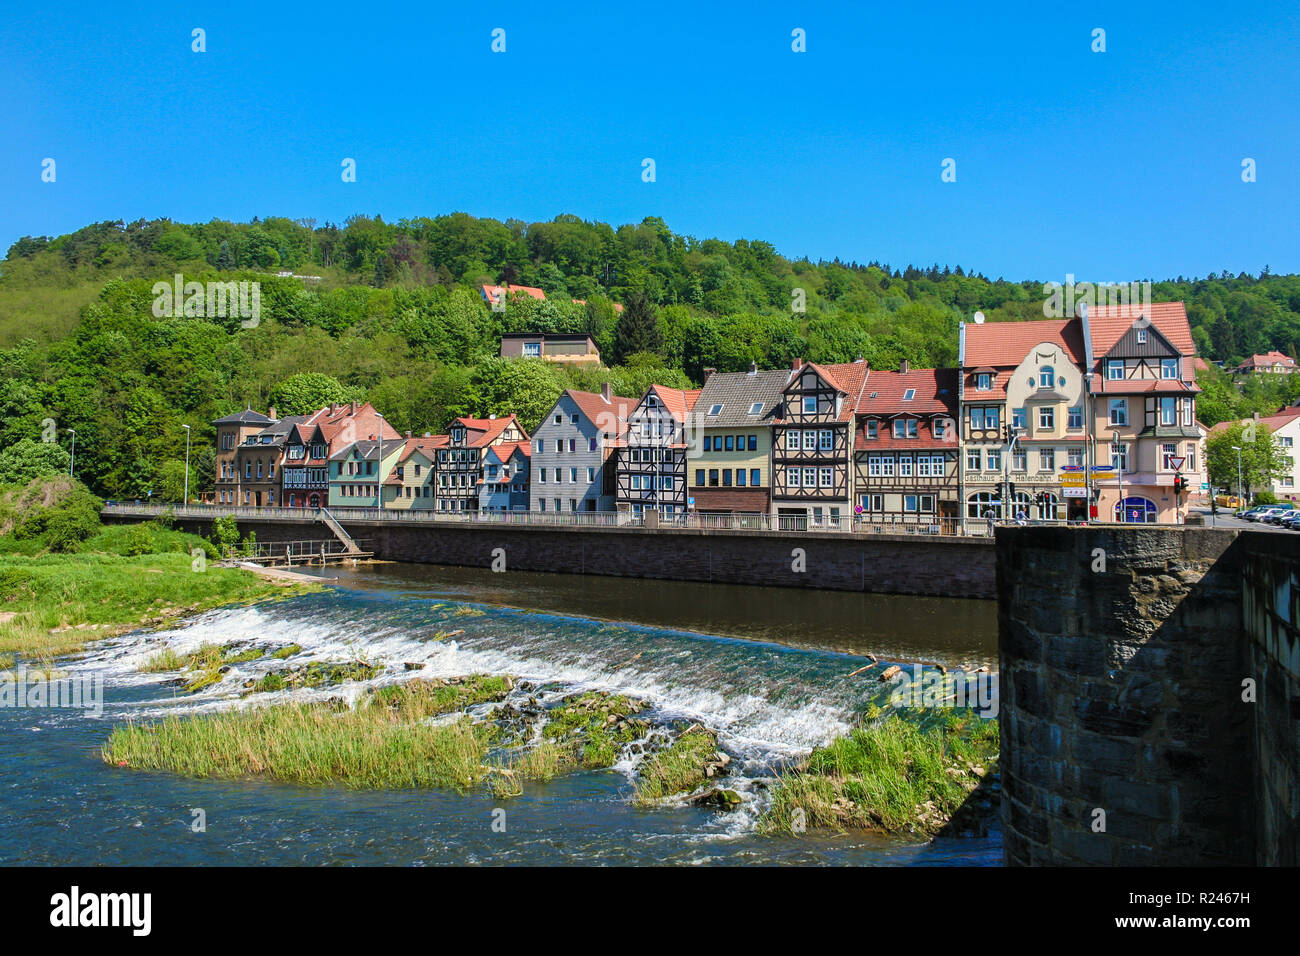 Vista panoramica del fiume Werra, la diga e lungo il fiume con la sua bella tradizionali tipiche case a graticcio di Hann. Münden, una città... Foto Stock